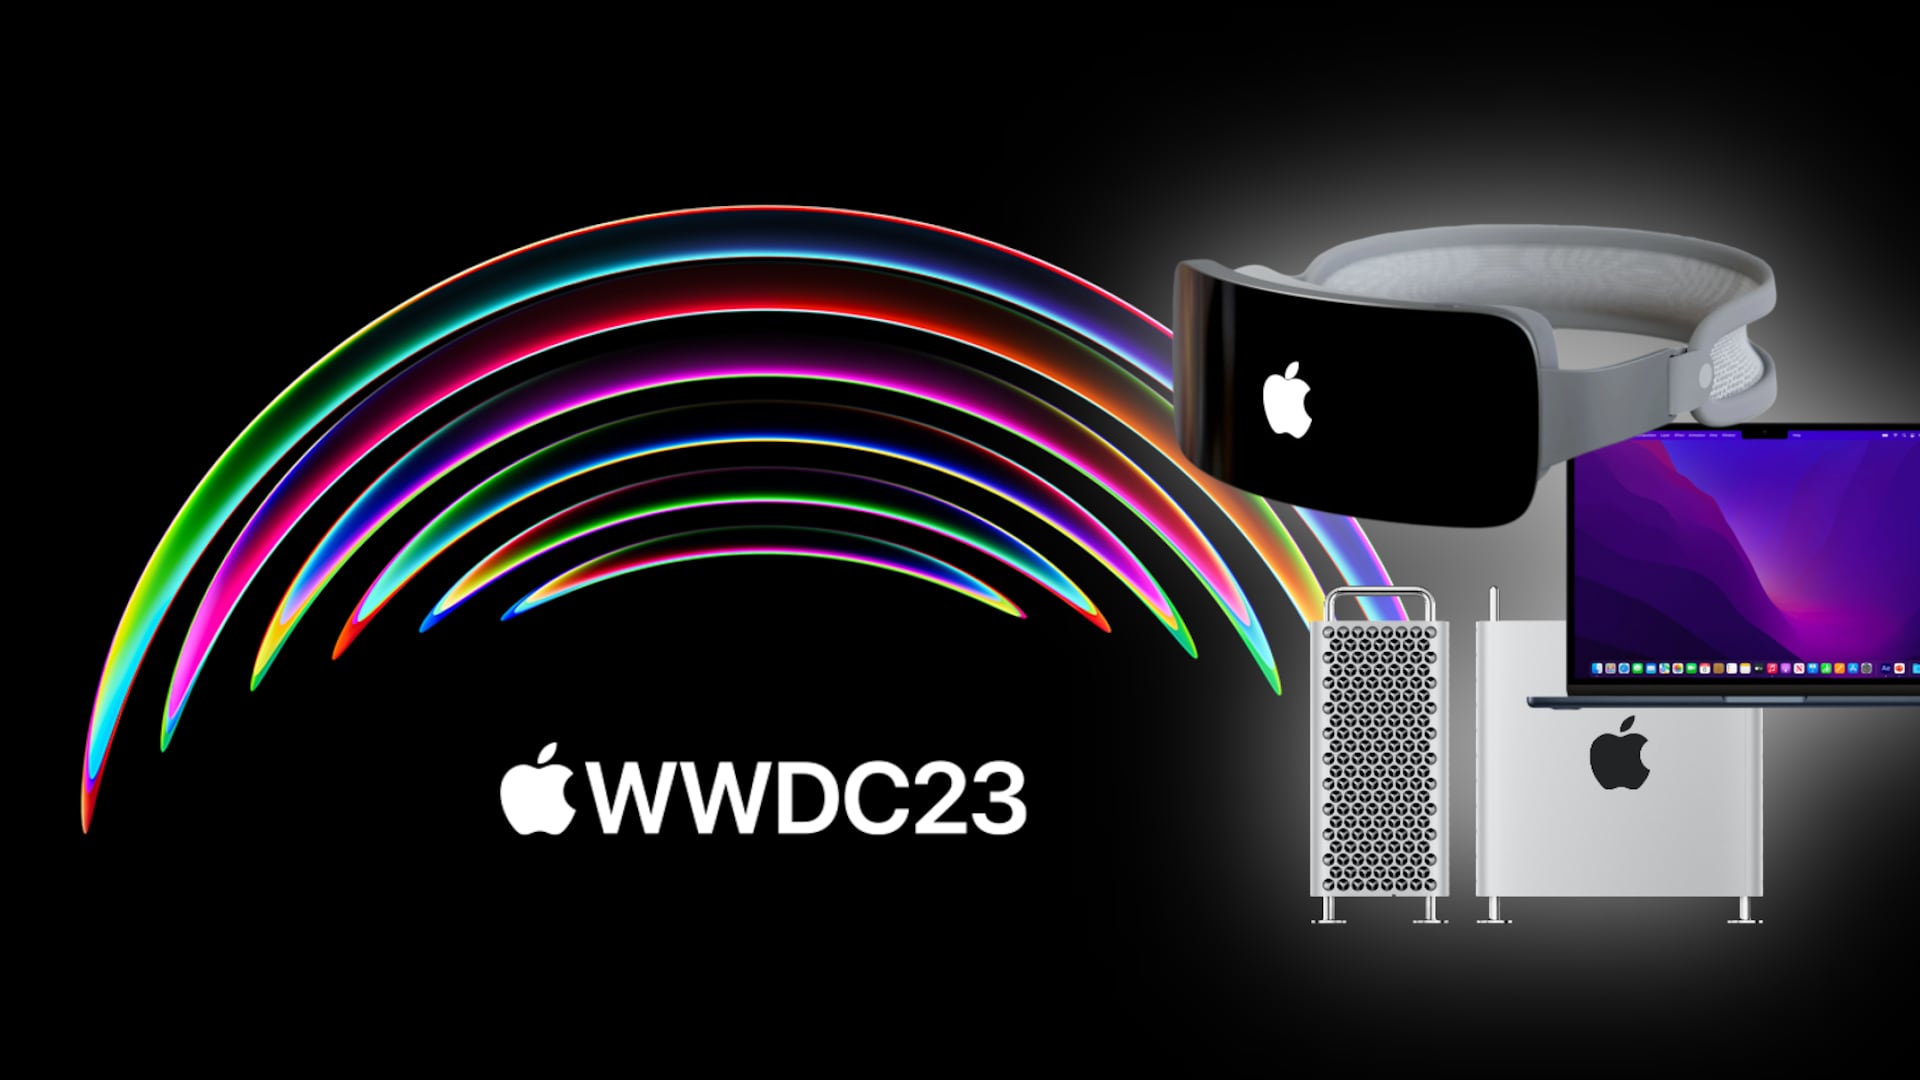 Apple está a horas de arrancar su conferencia WWDC23 donde mostrará su visor Realidad Mixta, Reality Pro. Pero habría más anuncios en puerta.